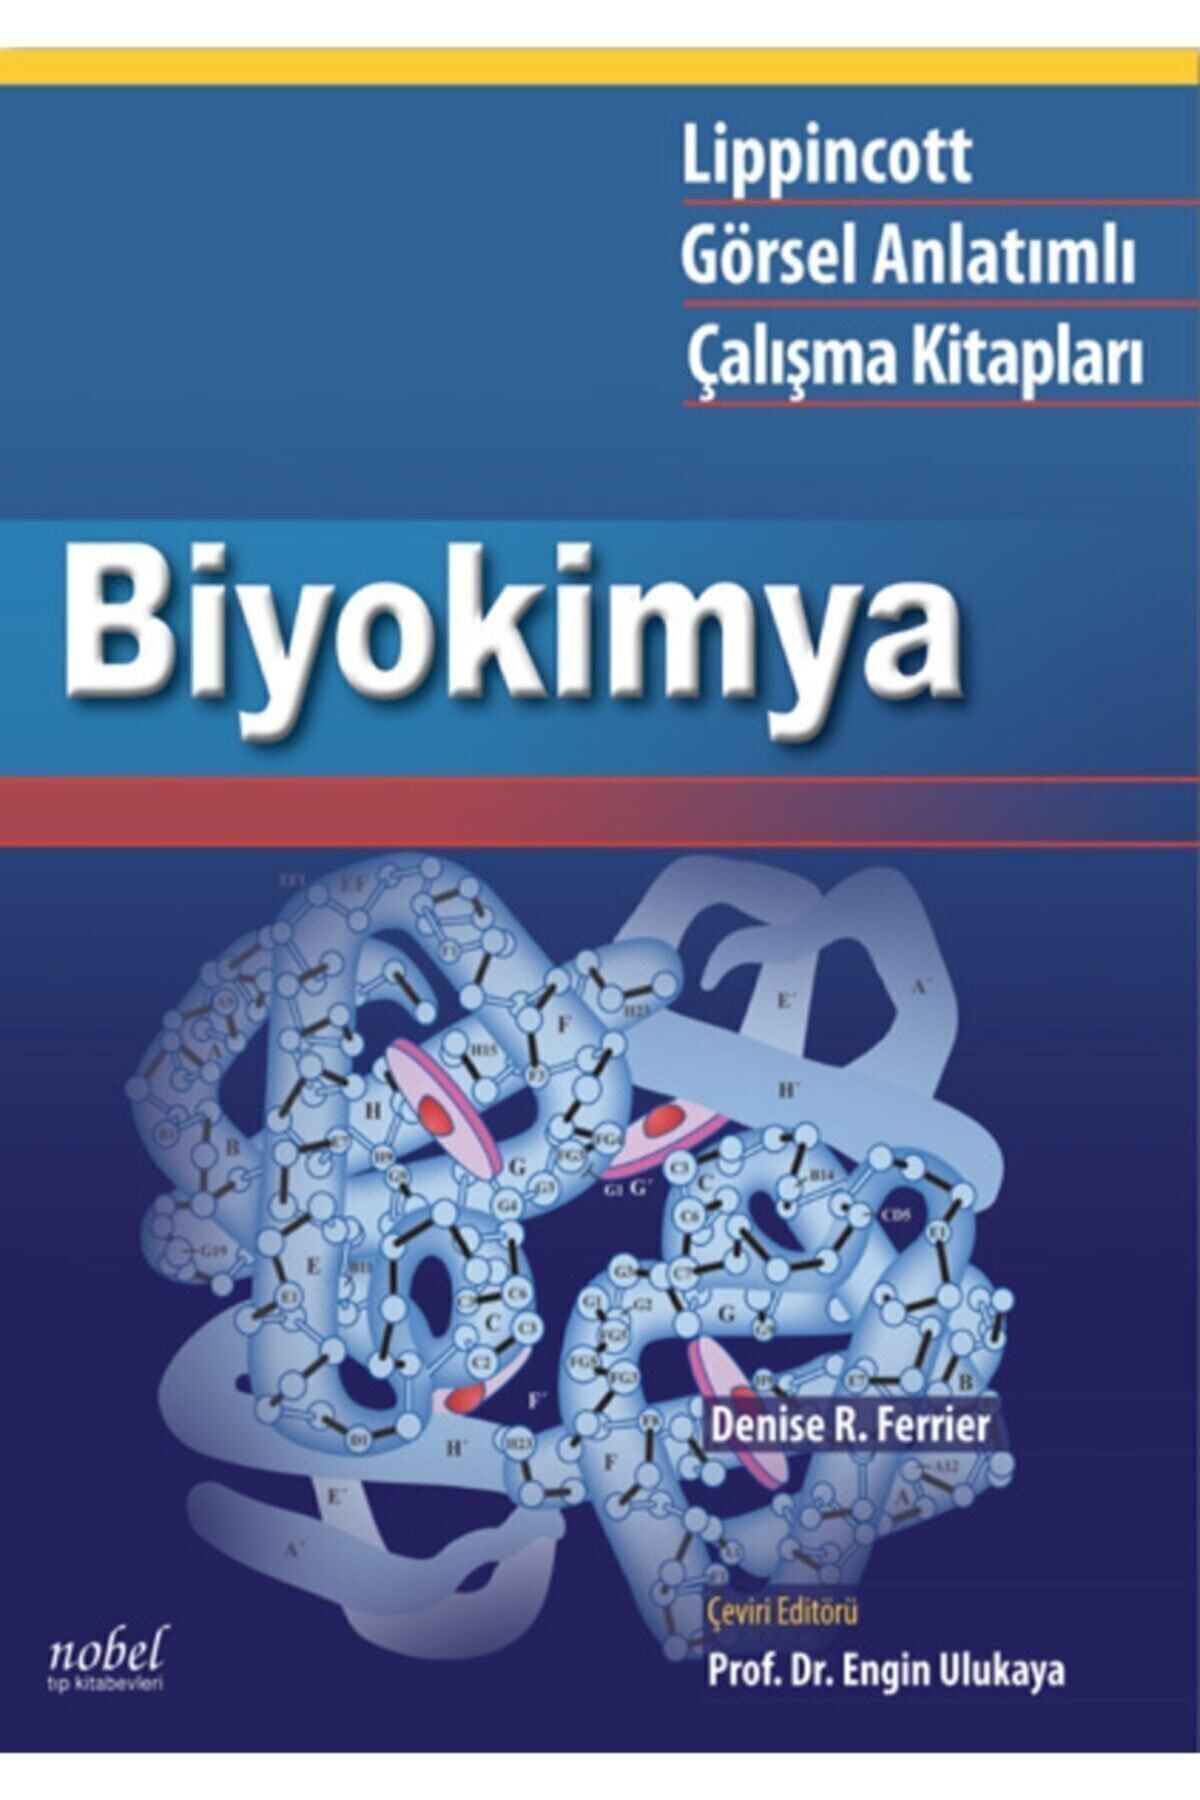 Nobel Tıp Kitabevi Lippincott Biyokimya: Görsel Anlatımlı Çalışma Kitapları